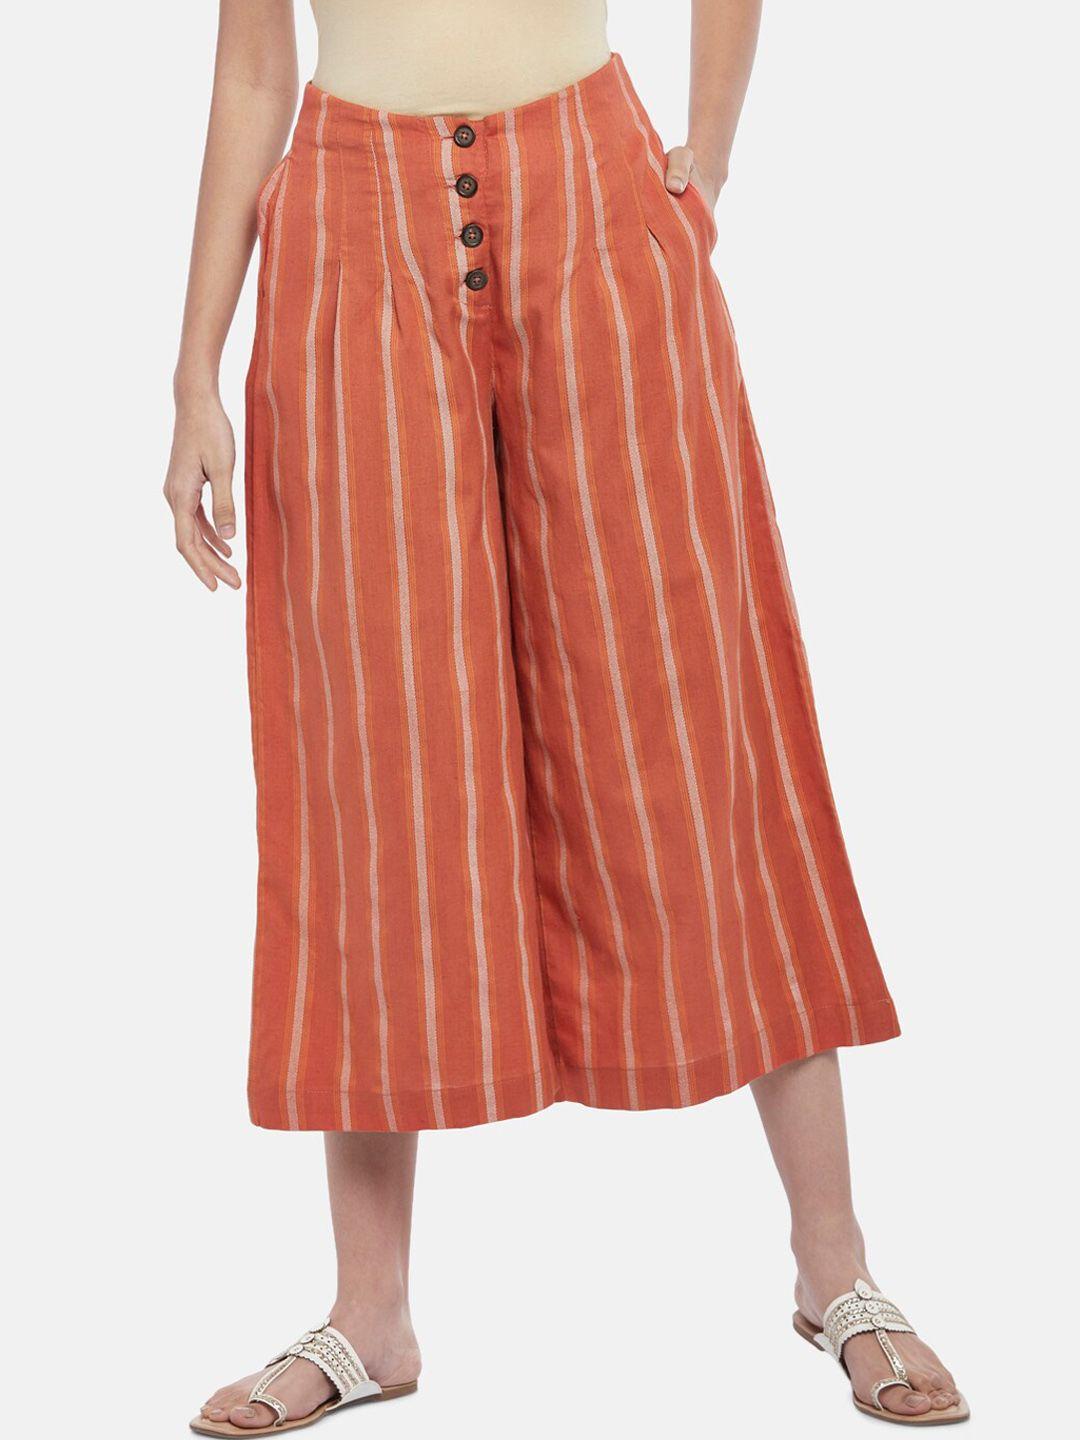 akkriti by pantaloons women rust striped culottes trousers